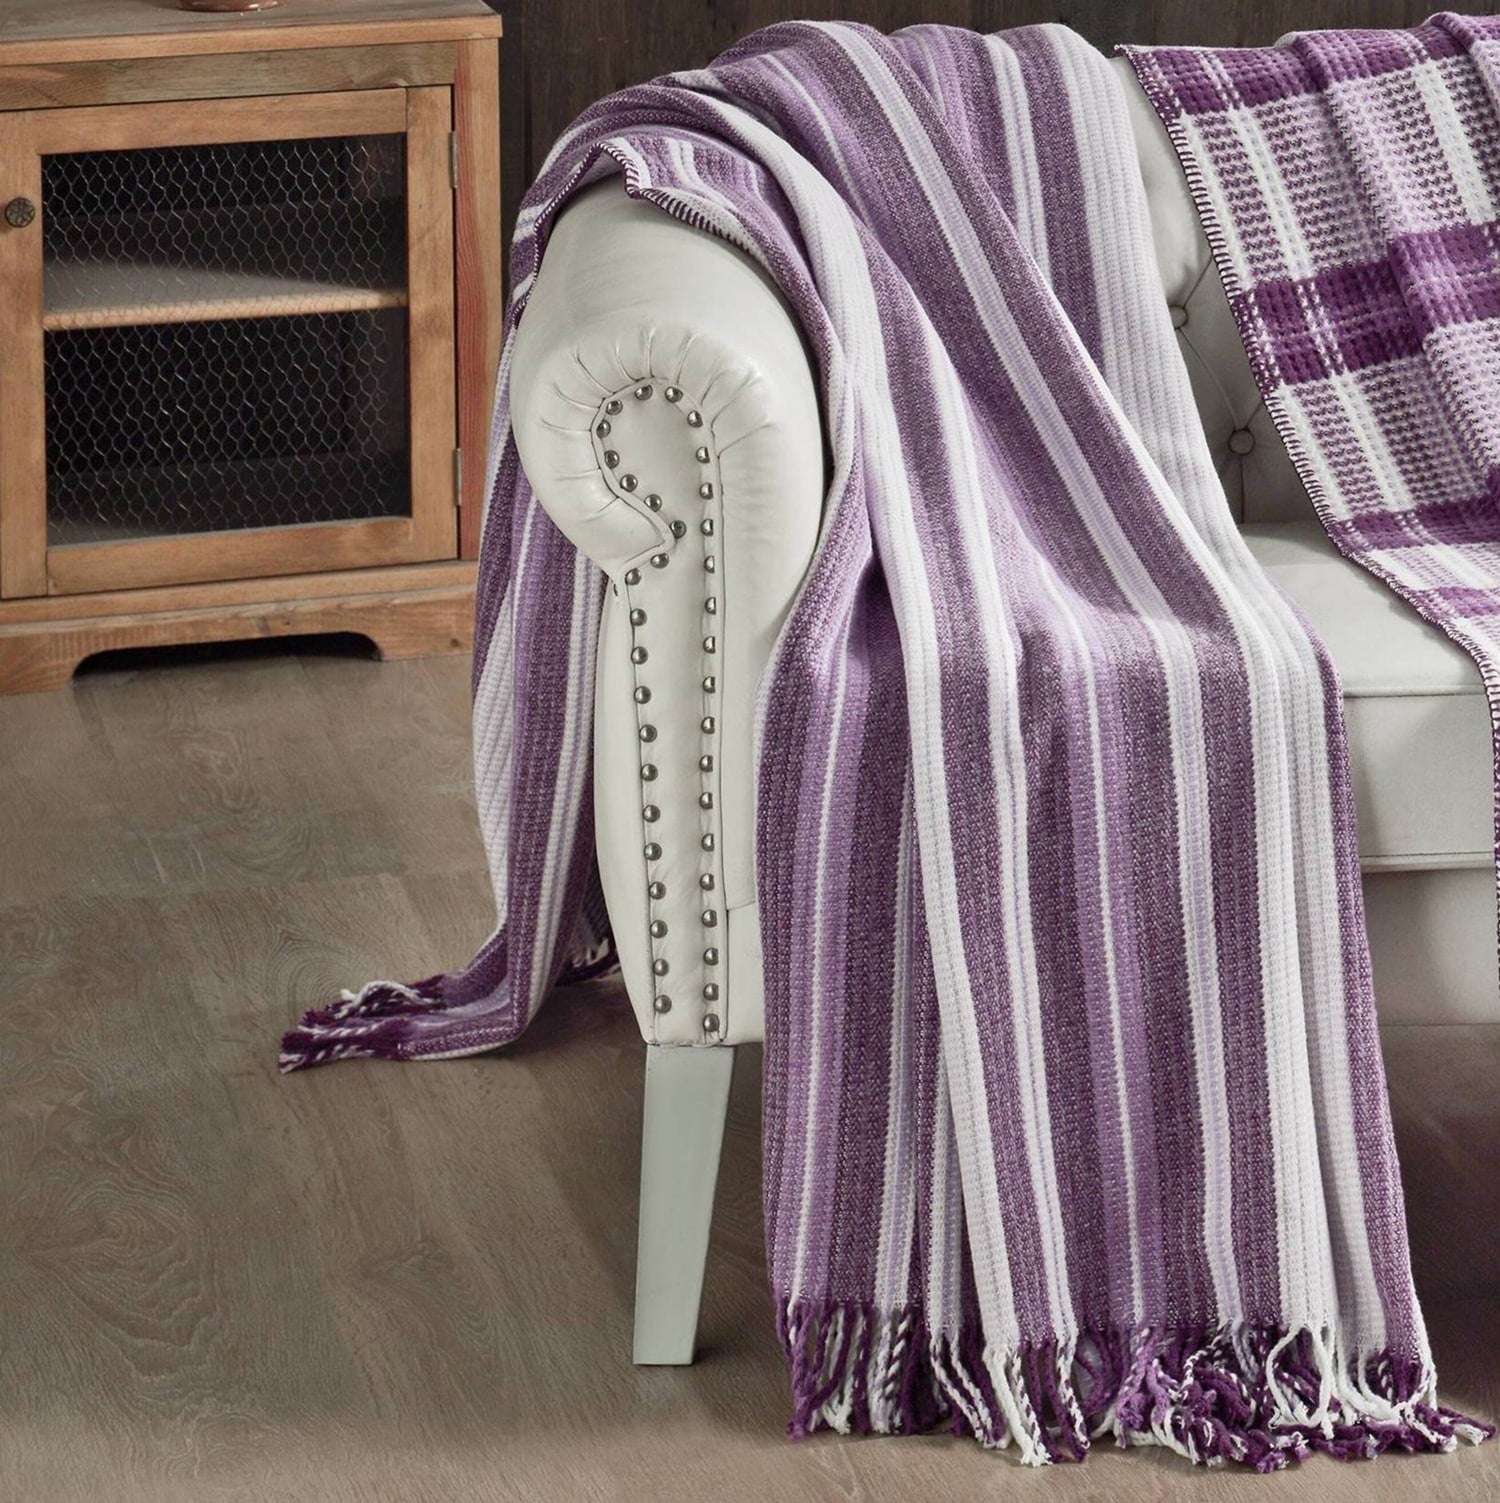 Scottish plaid blanket/SKC14113F/150x200